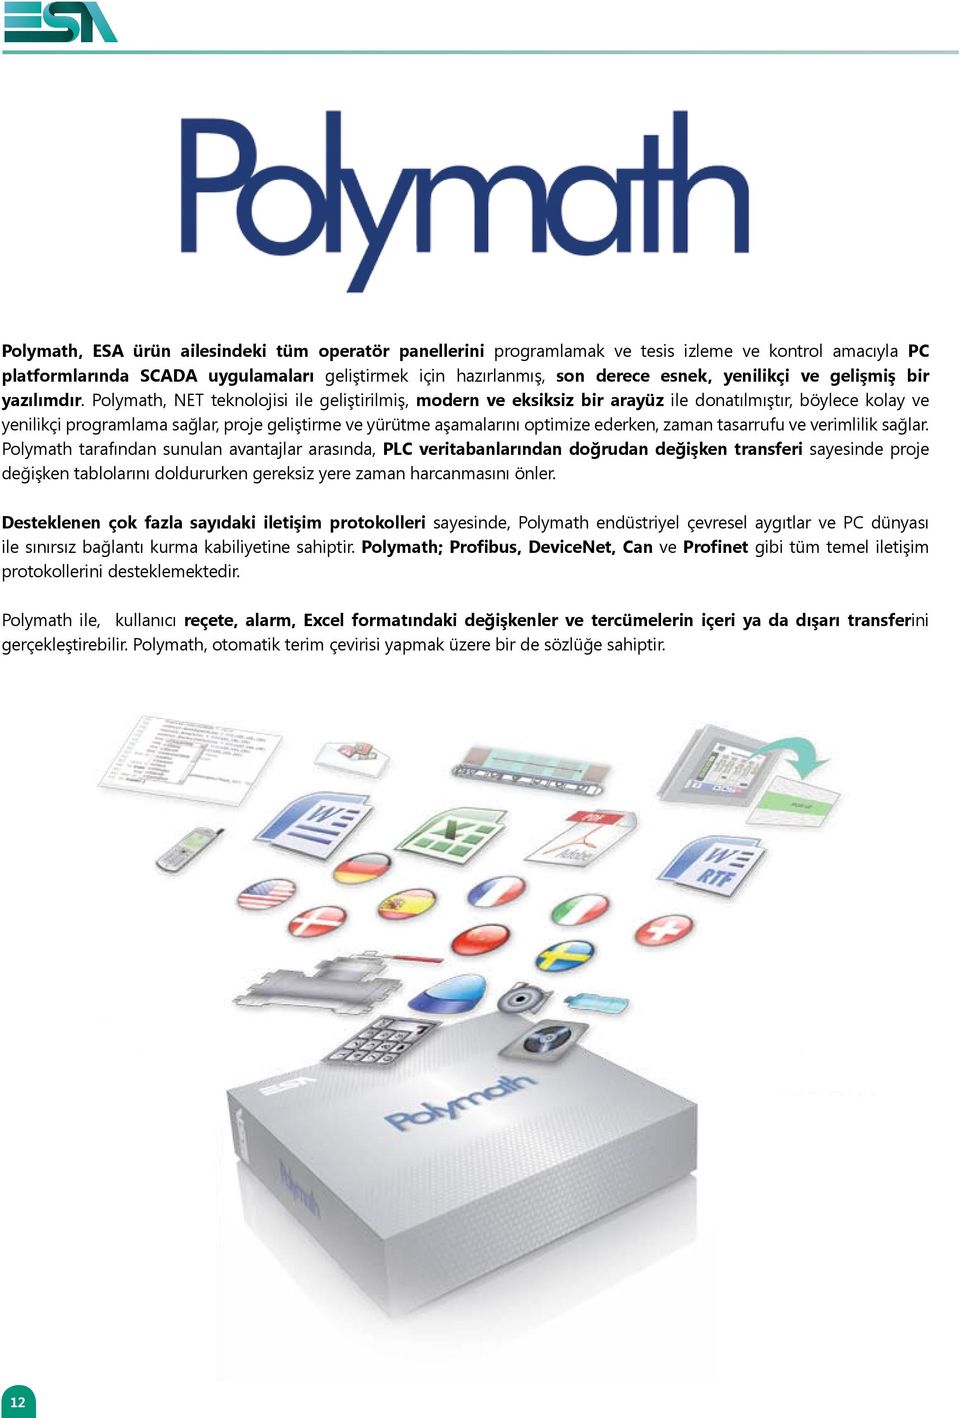 Polymath, NET teknolojisi ile geliştirilmiş, modern ve eksiksiz bir arayüz ile donatılmıştır, böylece kolay ve yenilikçi programlama sağlar, proje geliştirme ve yürütme aşamalarını optimize ederken,